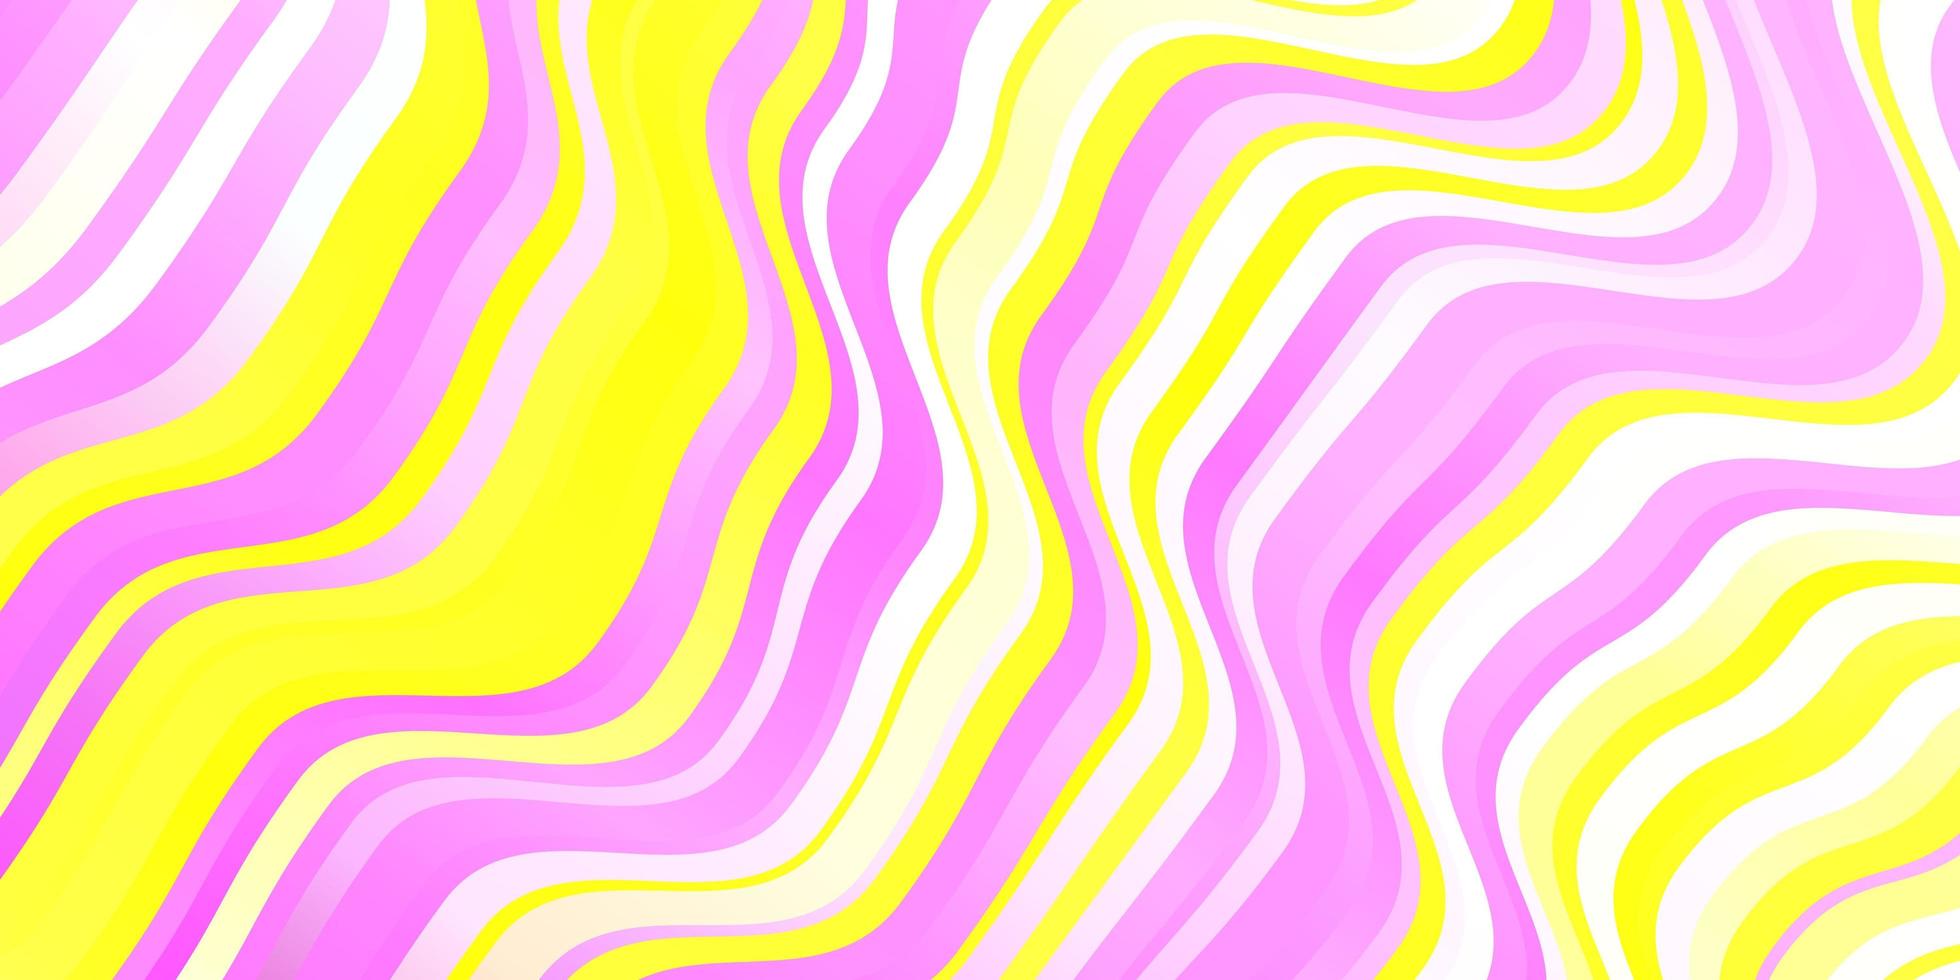 sfondo vettoriale rosa chiaro, giallo con linee curve.